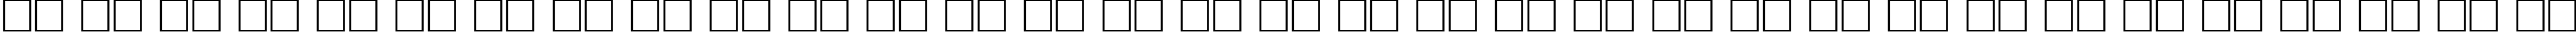 Пример написания русского алфавита шрифтом Antiqua110n